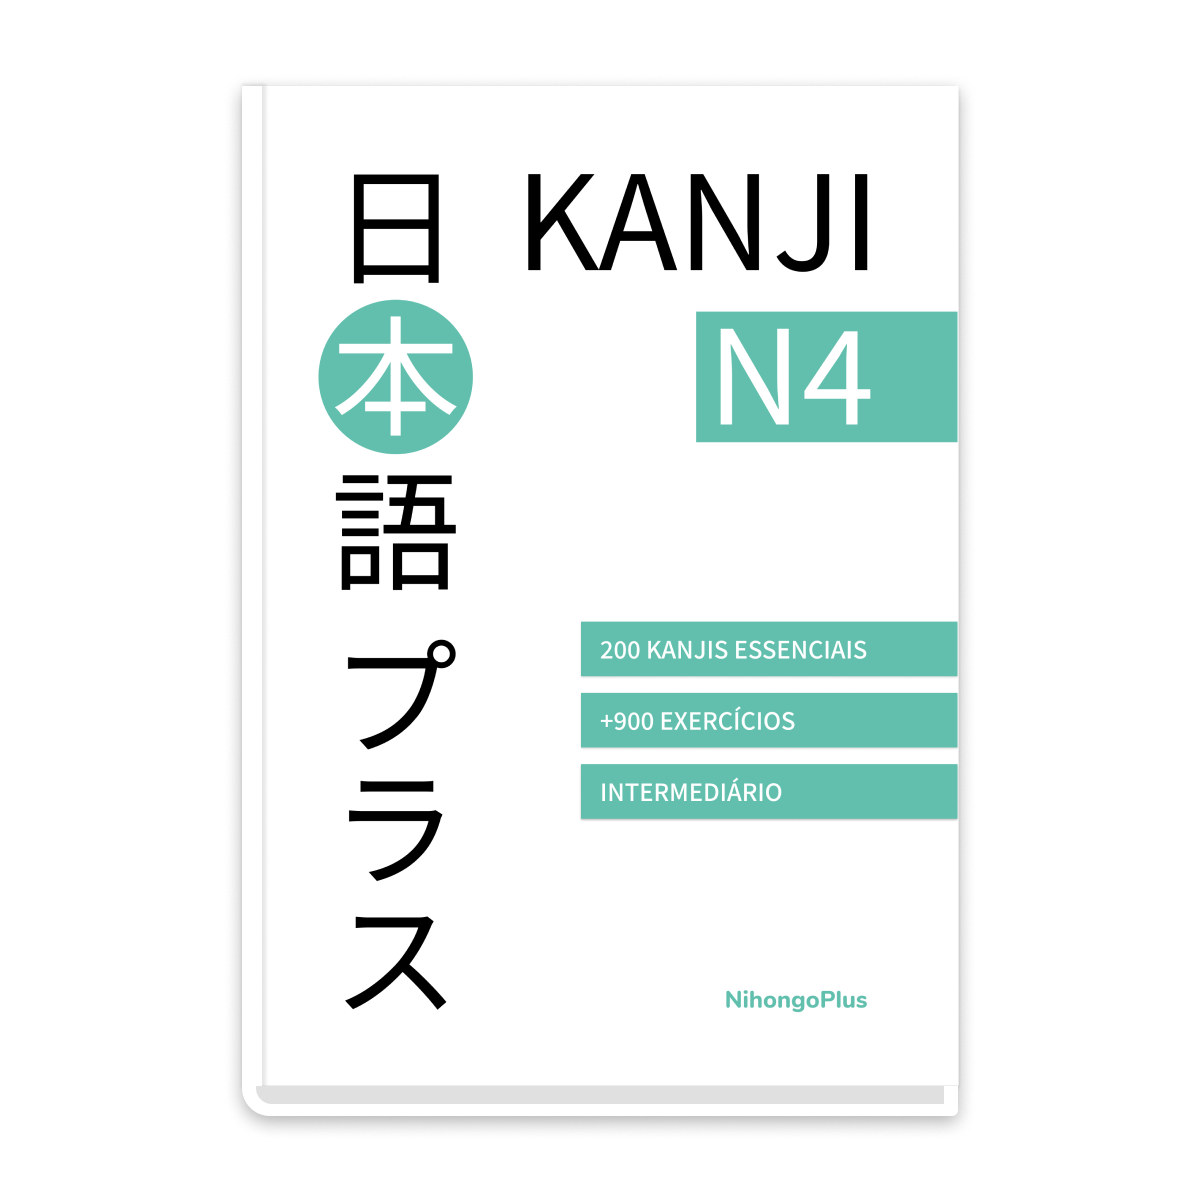 ebook de kanji n4 usado para aula de japonês